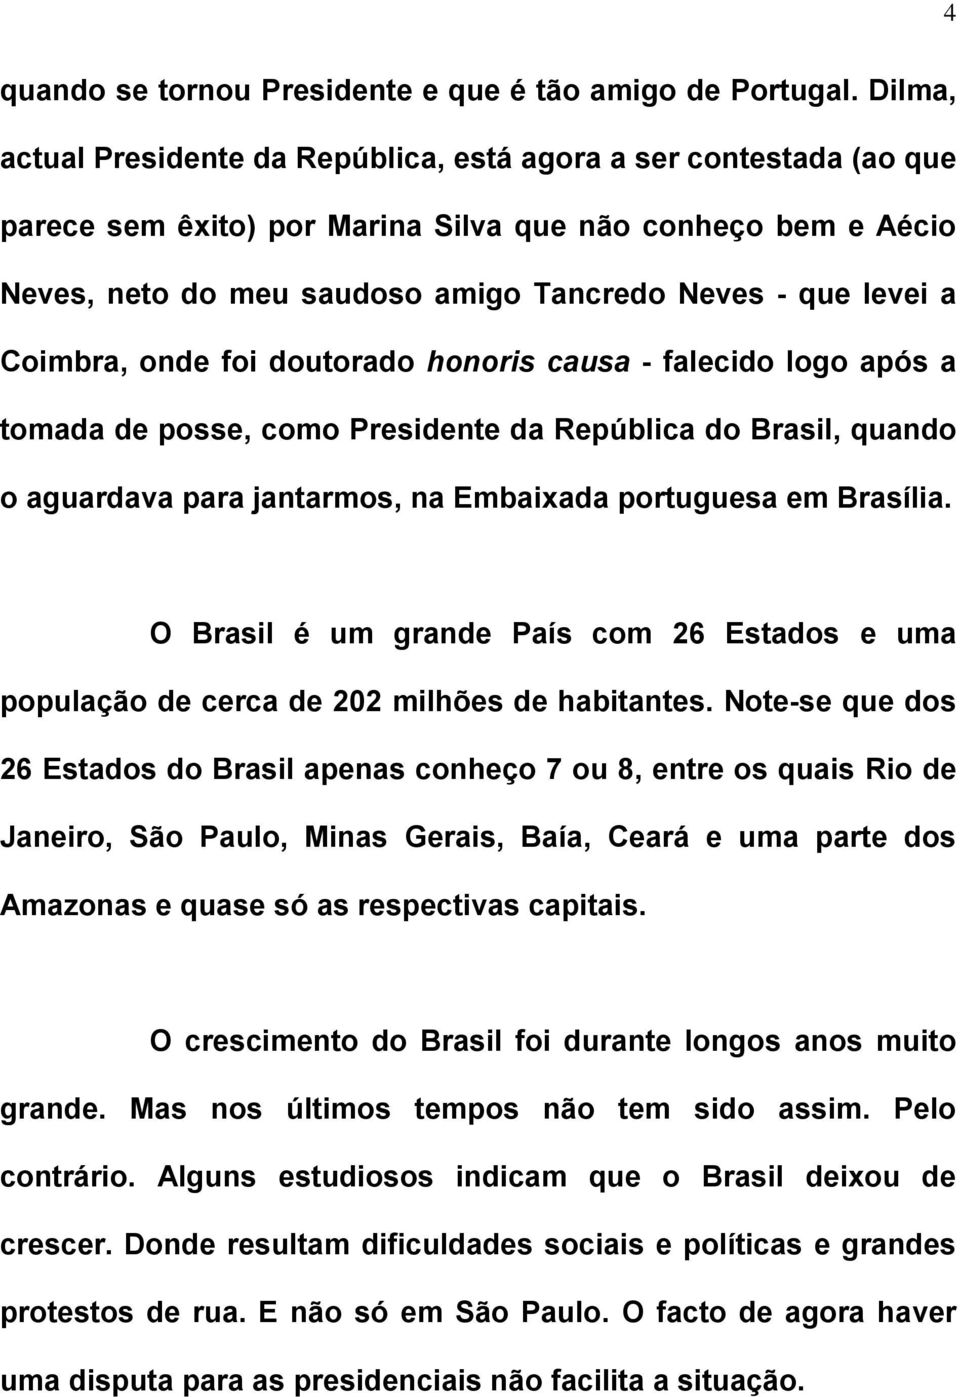 Coimbra, onde foi doutorado honoris causa - falecido logo após a tomada de posse, como Presidente da República do Brasil, quando o aguardava para jantarmos, na Embaixada portuguesa em Brasília.